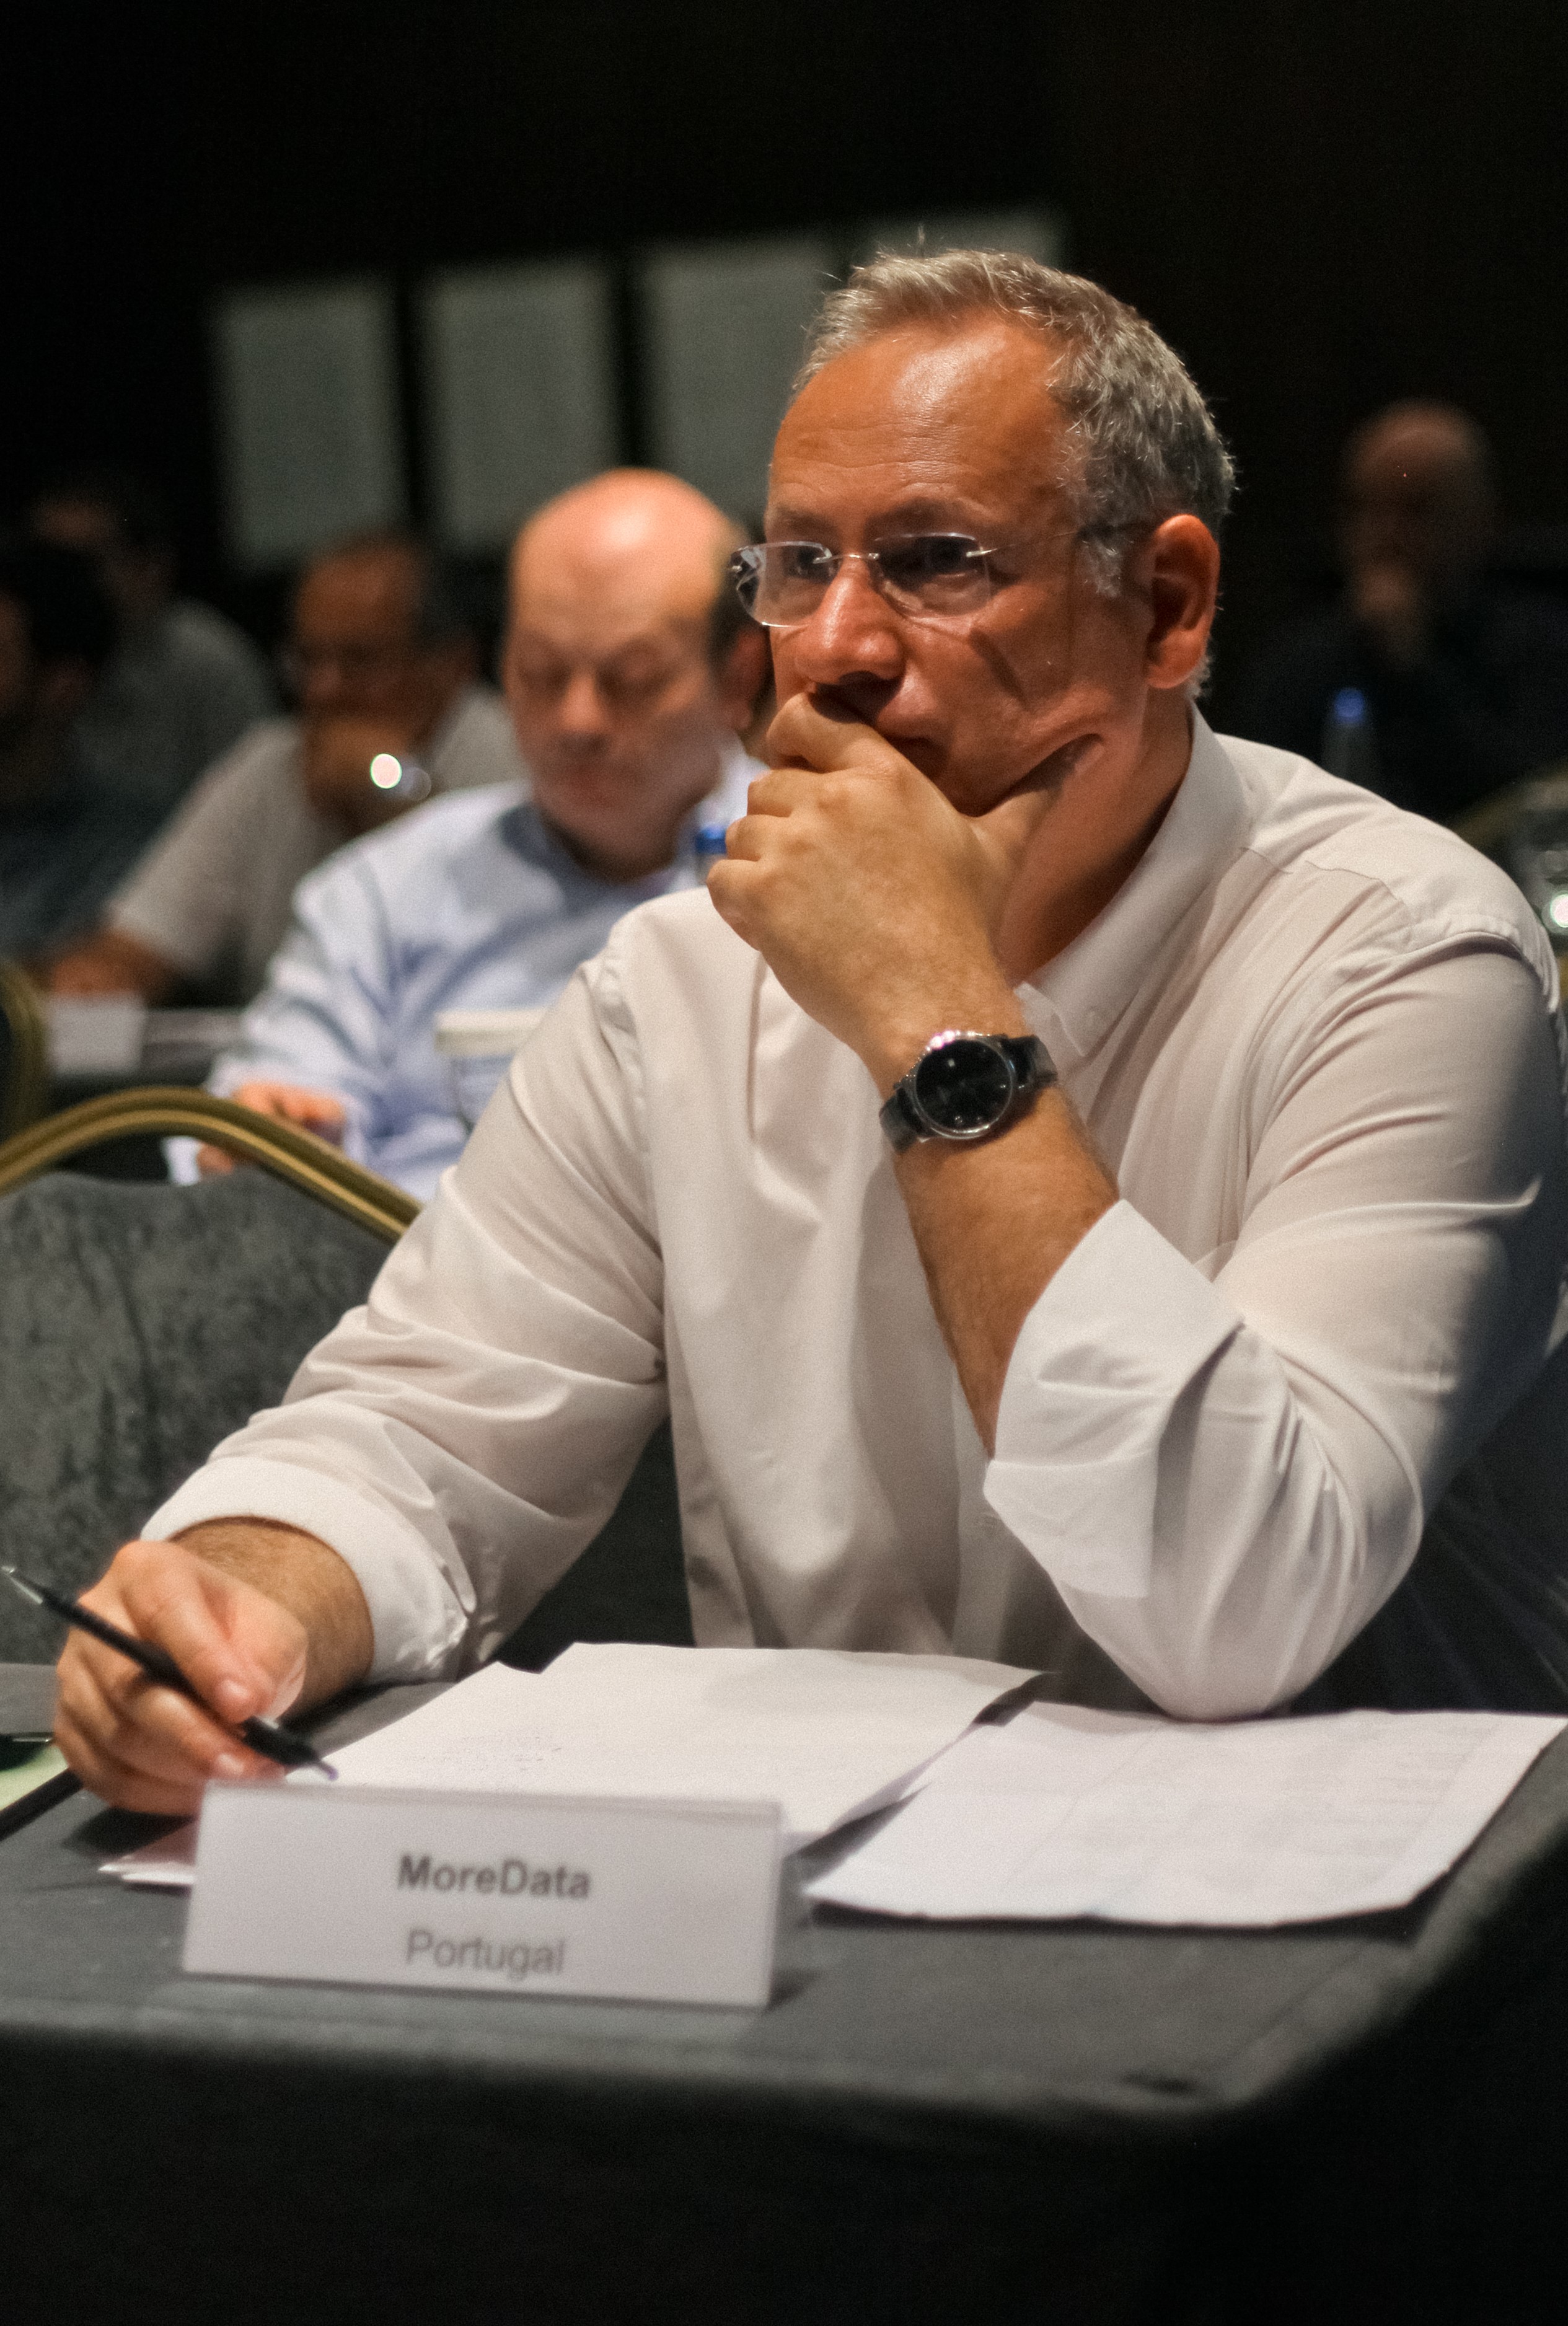 Director Executivo da MoreData na reunião da ETN de 2018